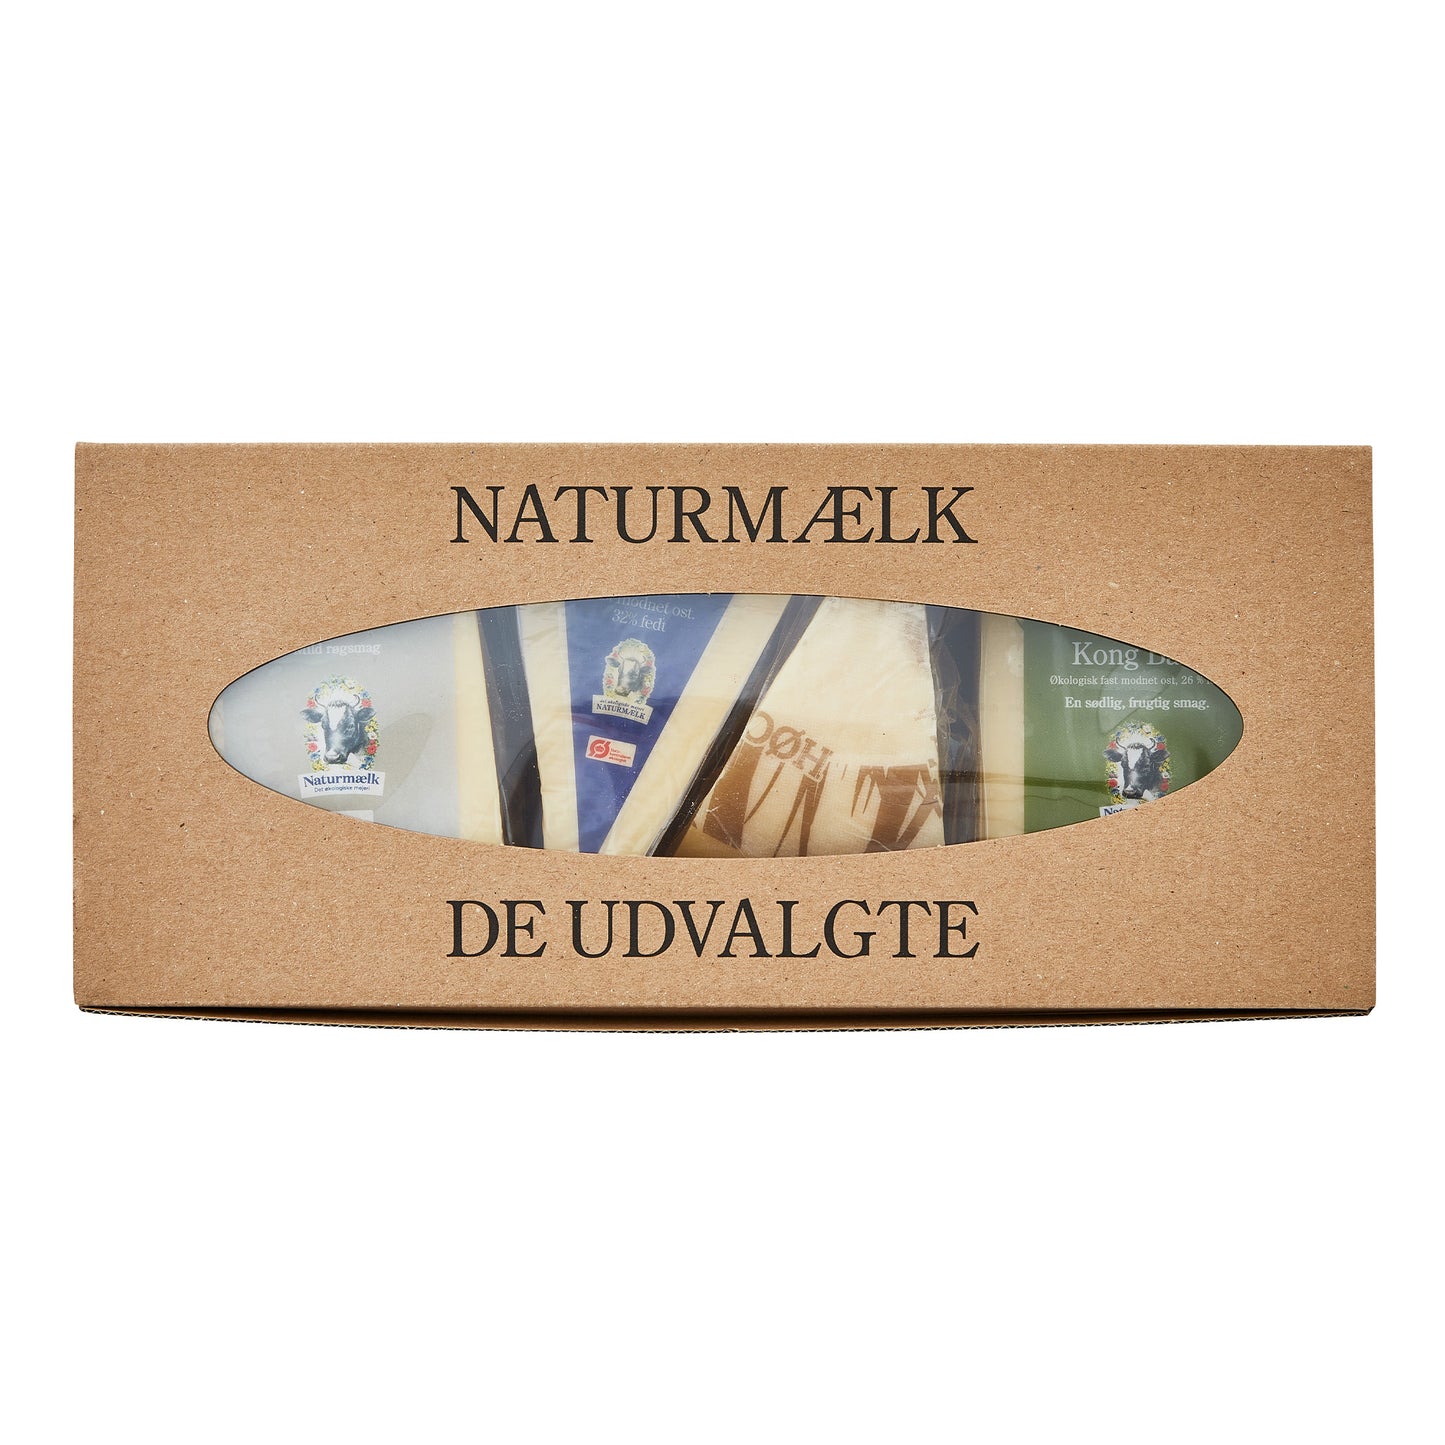 Naturost.dk 'De Udvalgte' kasse med vindue, der viser ostemærker.